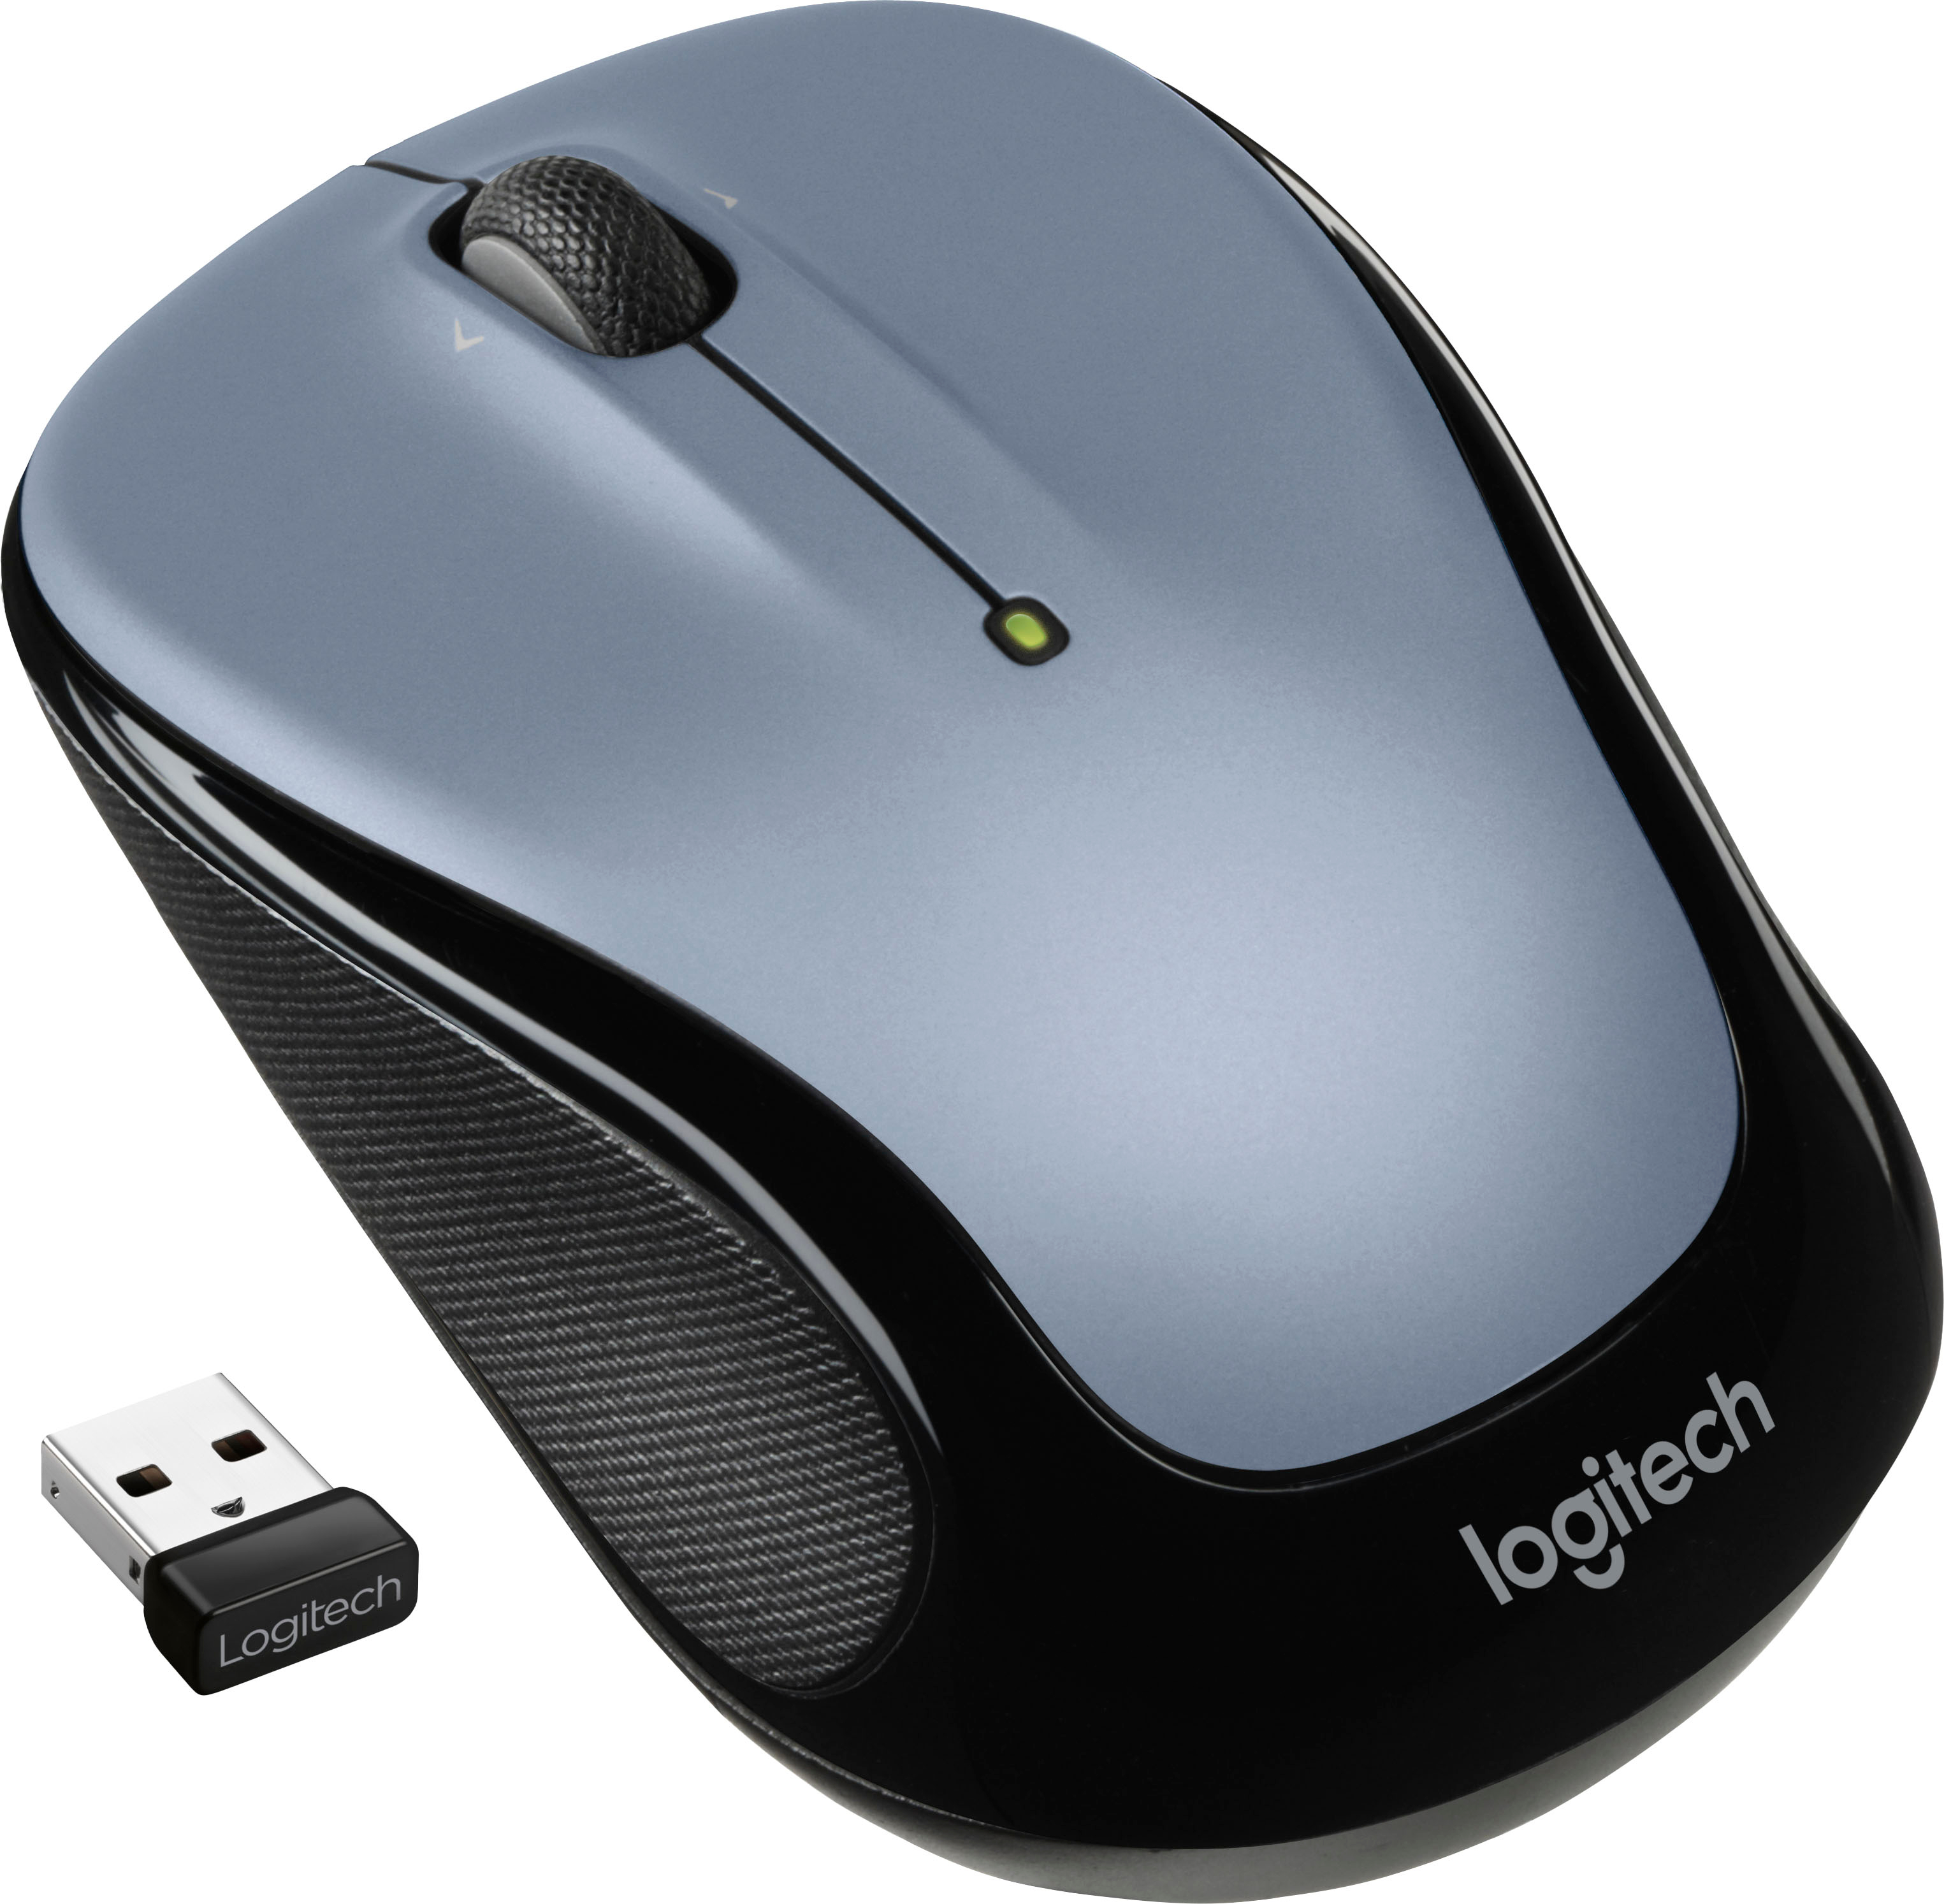 Buy Logitech Advanced Full-Size Wireless Mouse at Ubuy Uganda